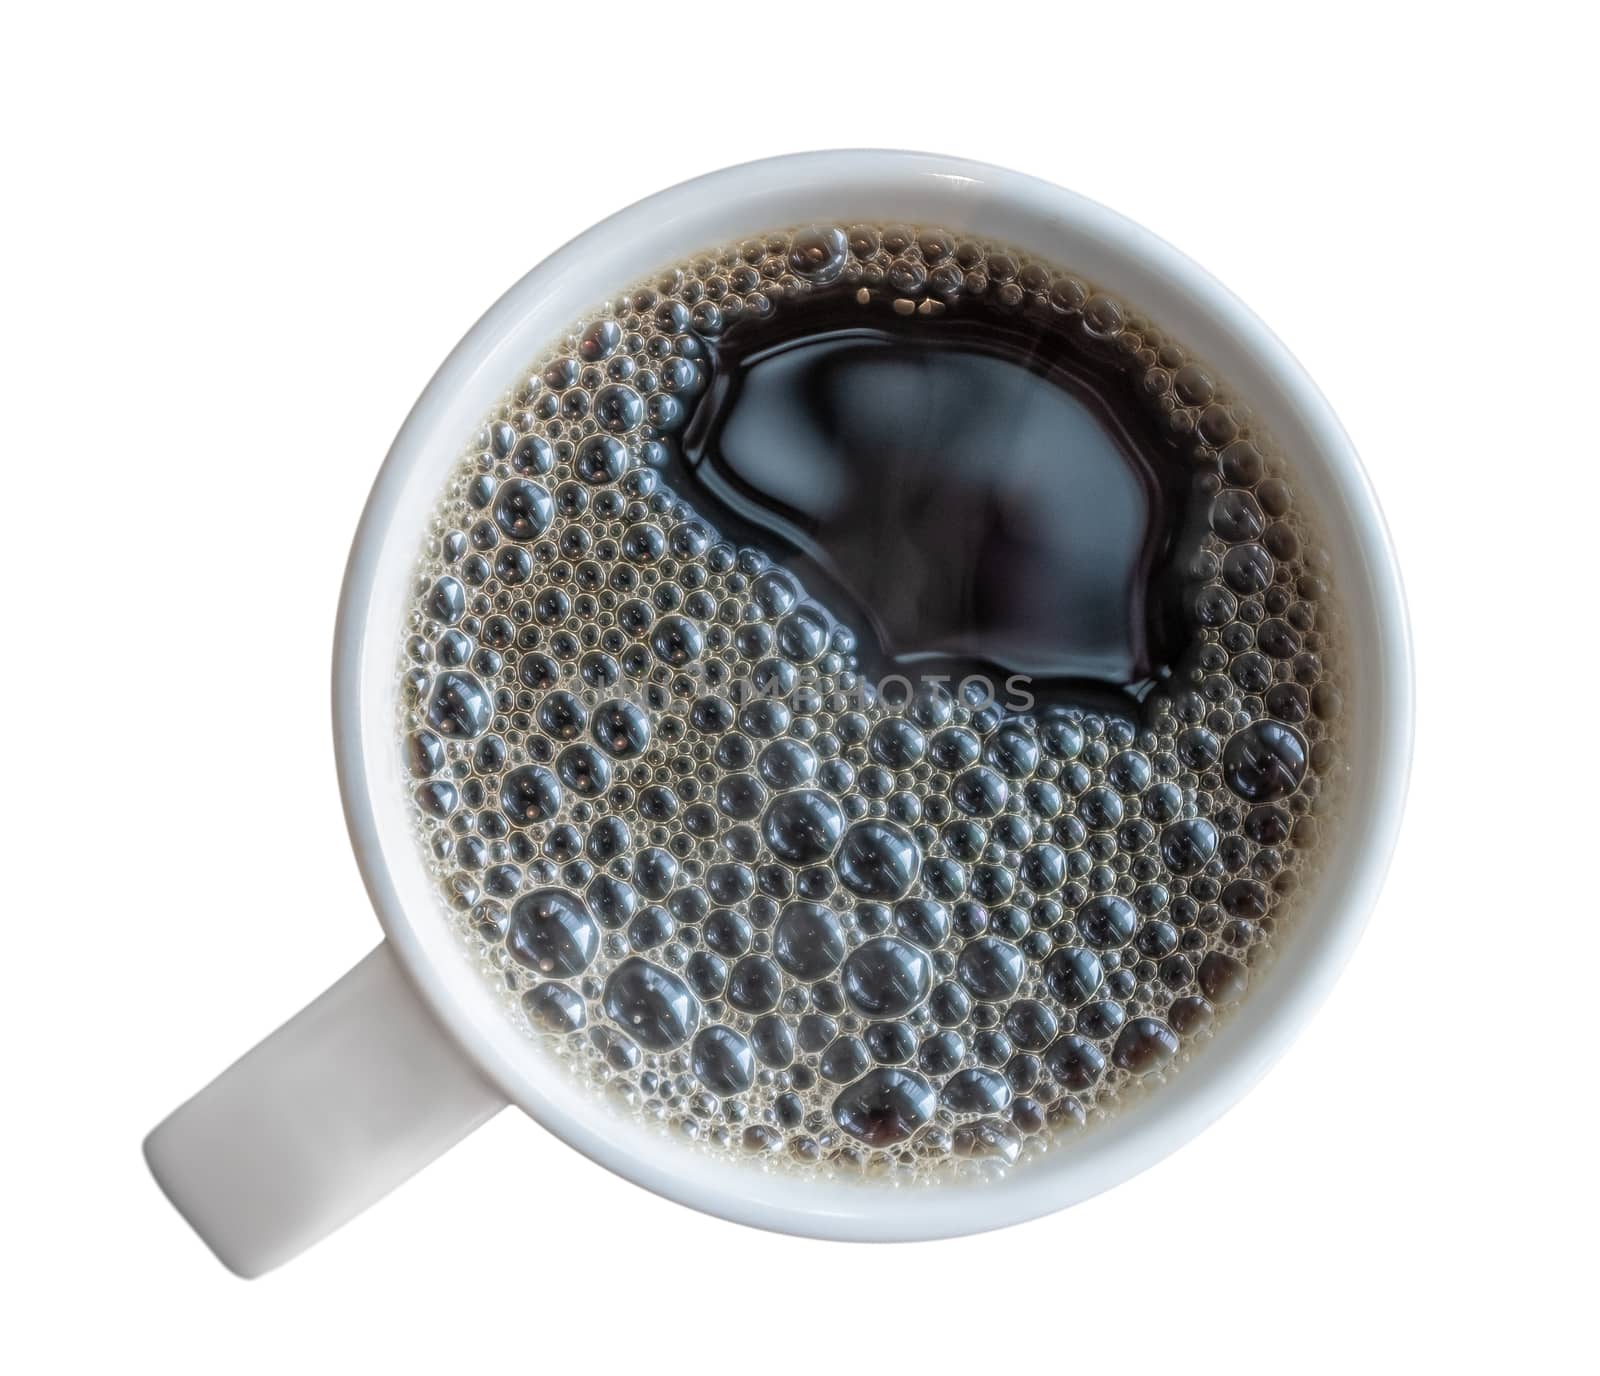 Mug Of Fresh Black Coffee by mrdoomits